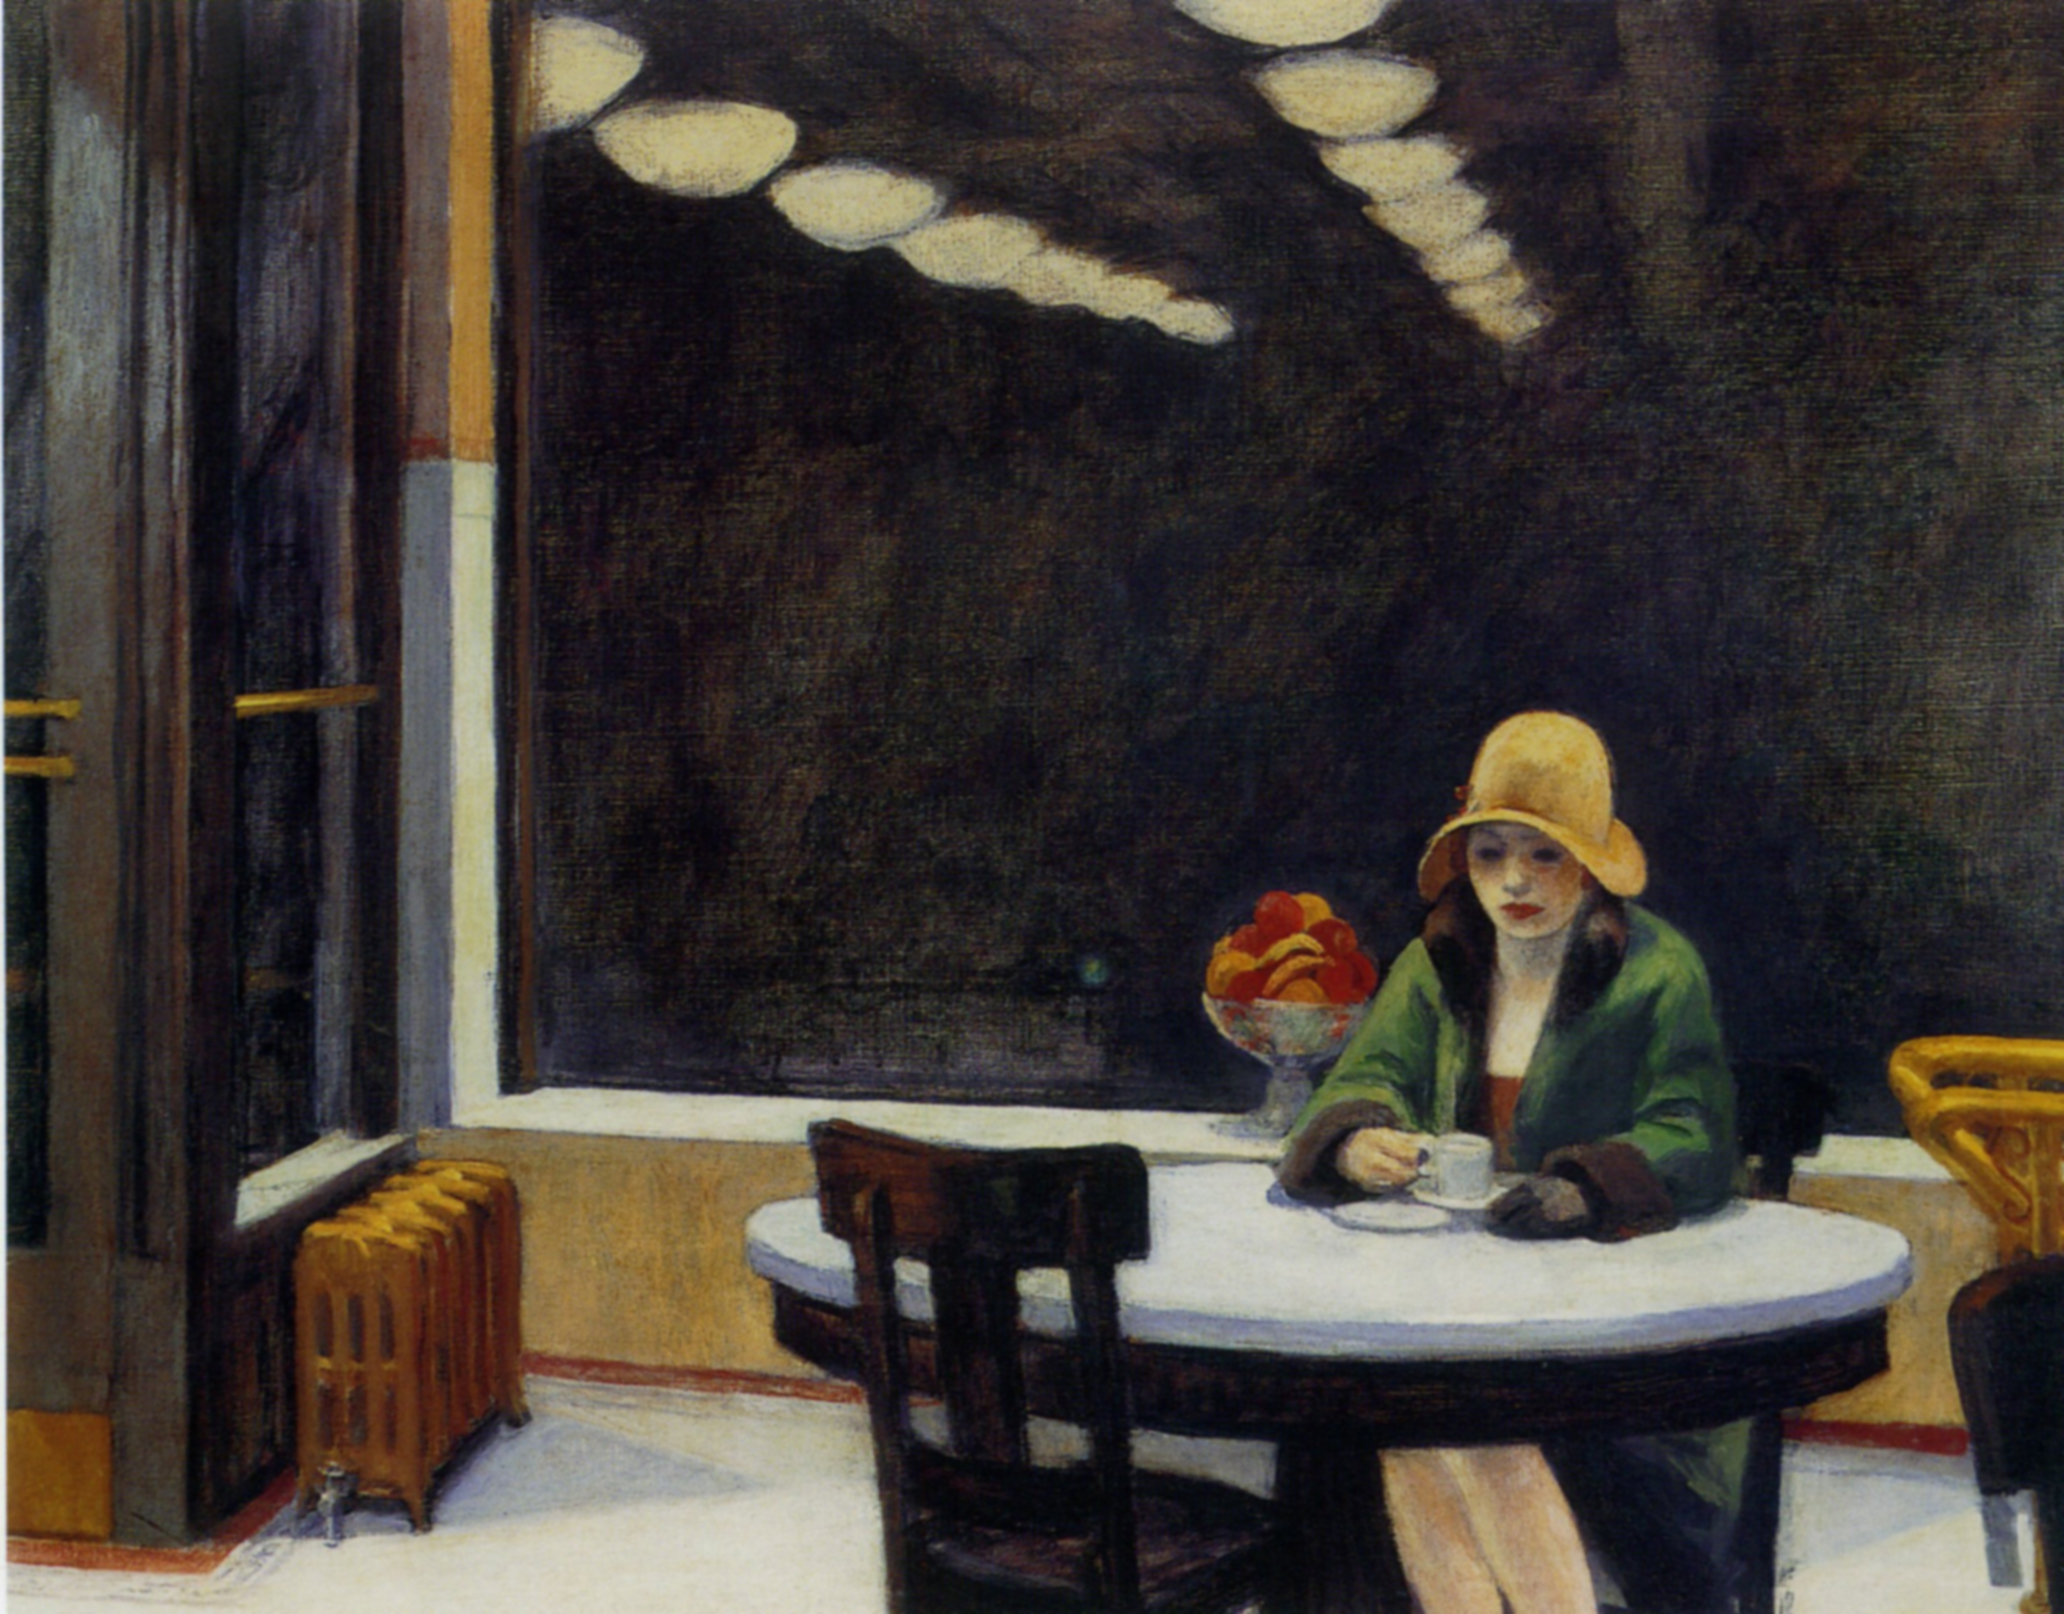 自助餐廳 by Edward Hopper - 1927 - 71.4 cm × 91.4 cm 